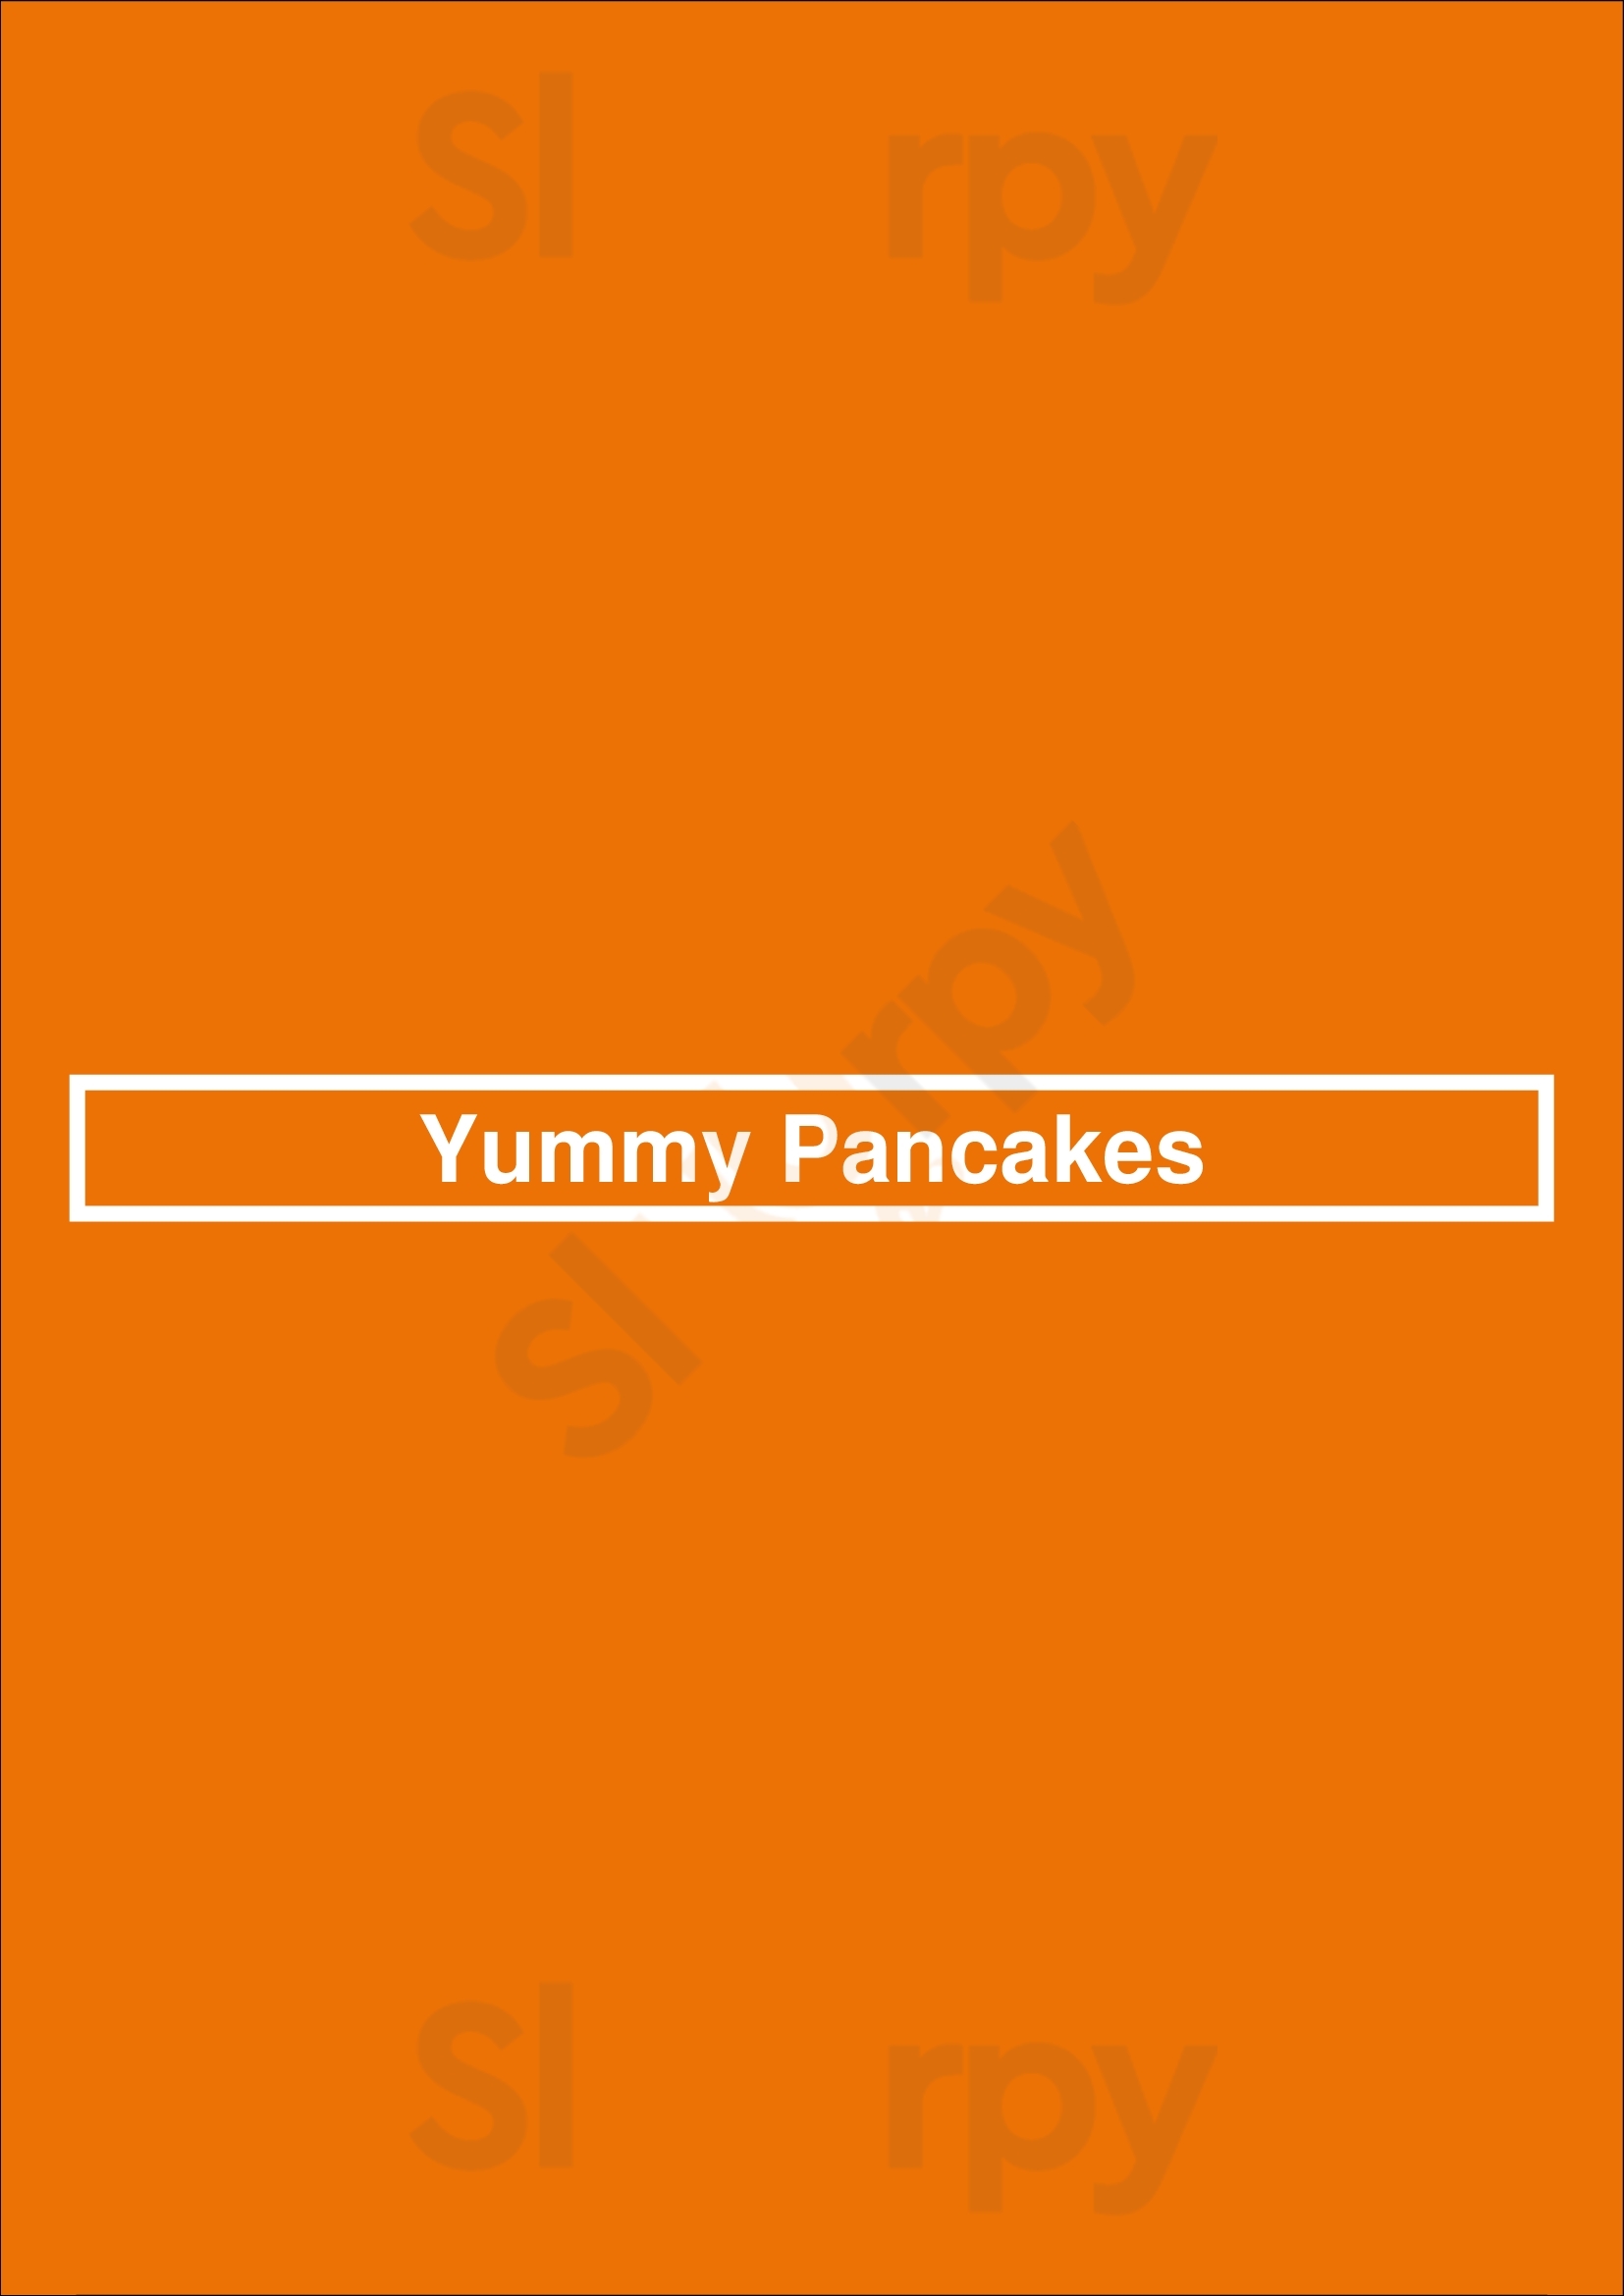 Yummy Pancakes Lyon Menu - 1